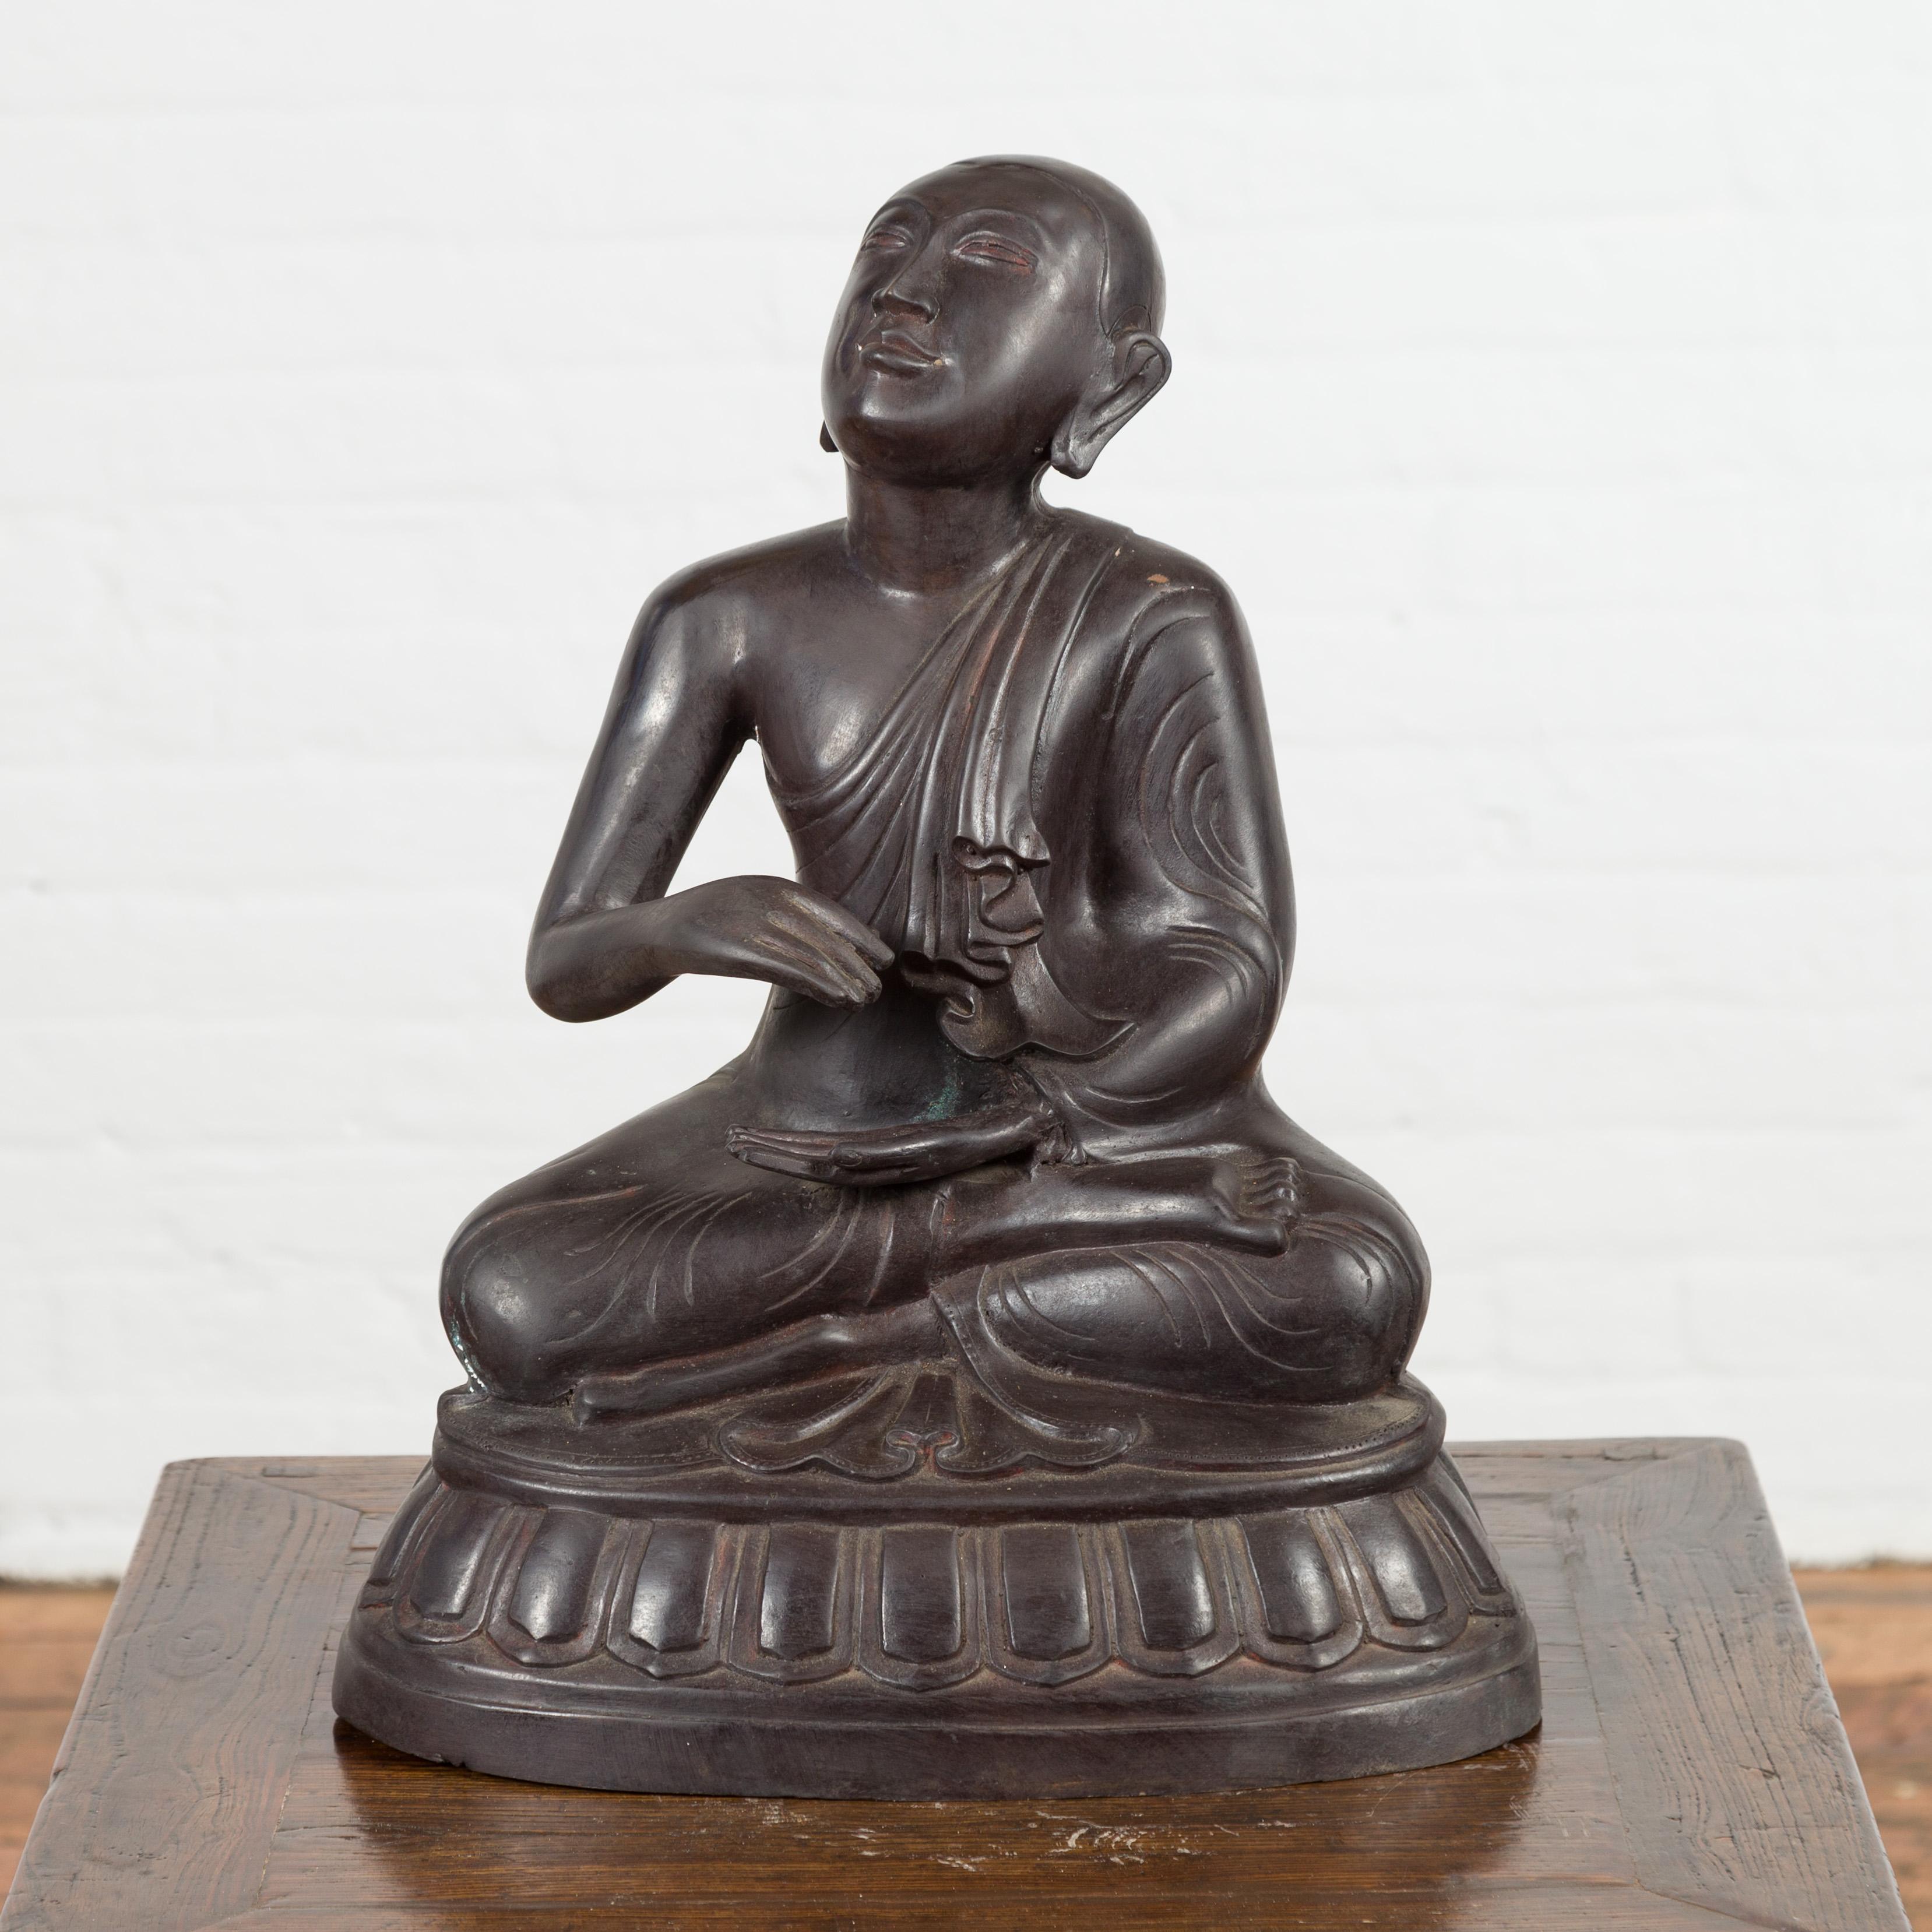 Une sculpture vintage en bronze représentant un moine en prière assis sur un socle. Créée avec la technique traditionnelle de la cire perdue qui permet une grande précision et finesse dans les détails, cette statue vintage représente un moine en